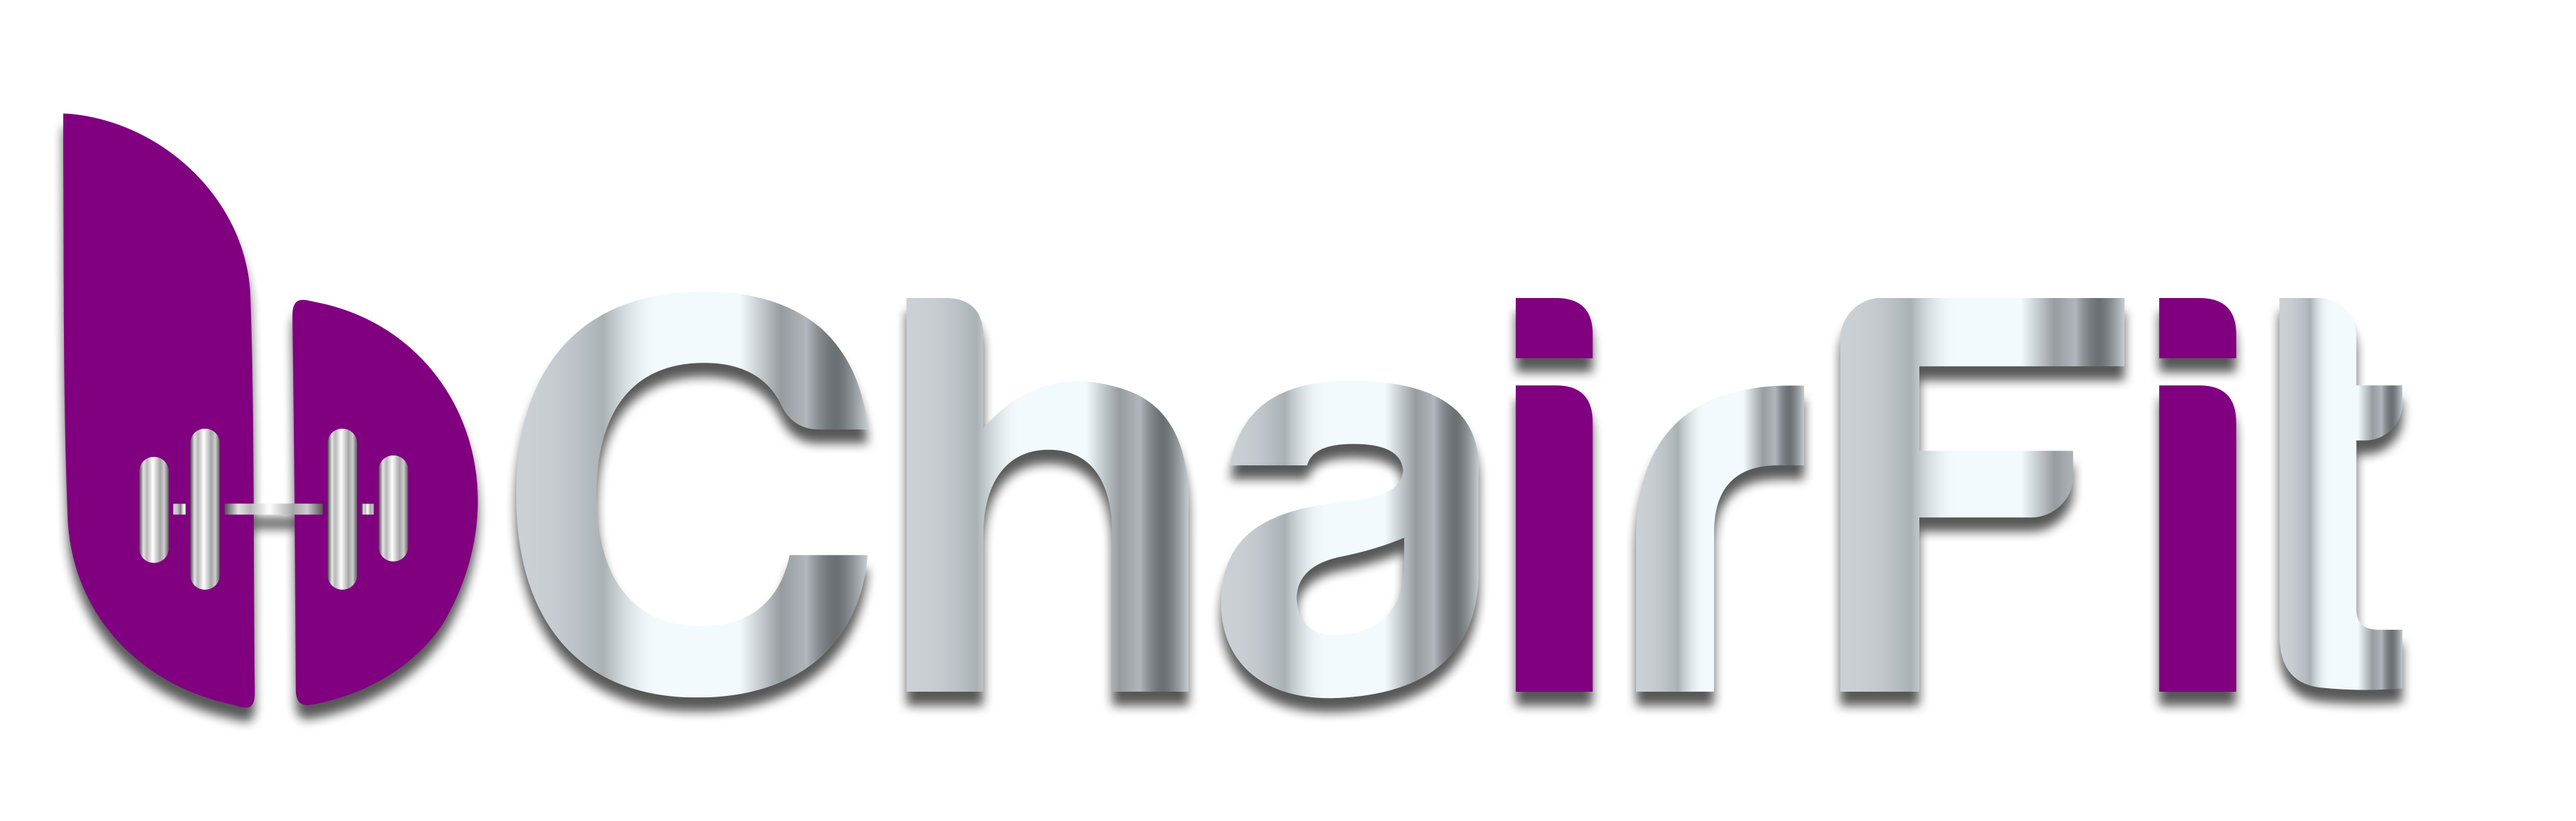 bChairFit Logo